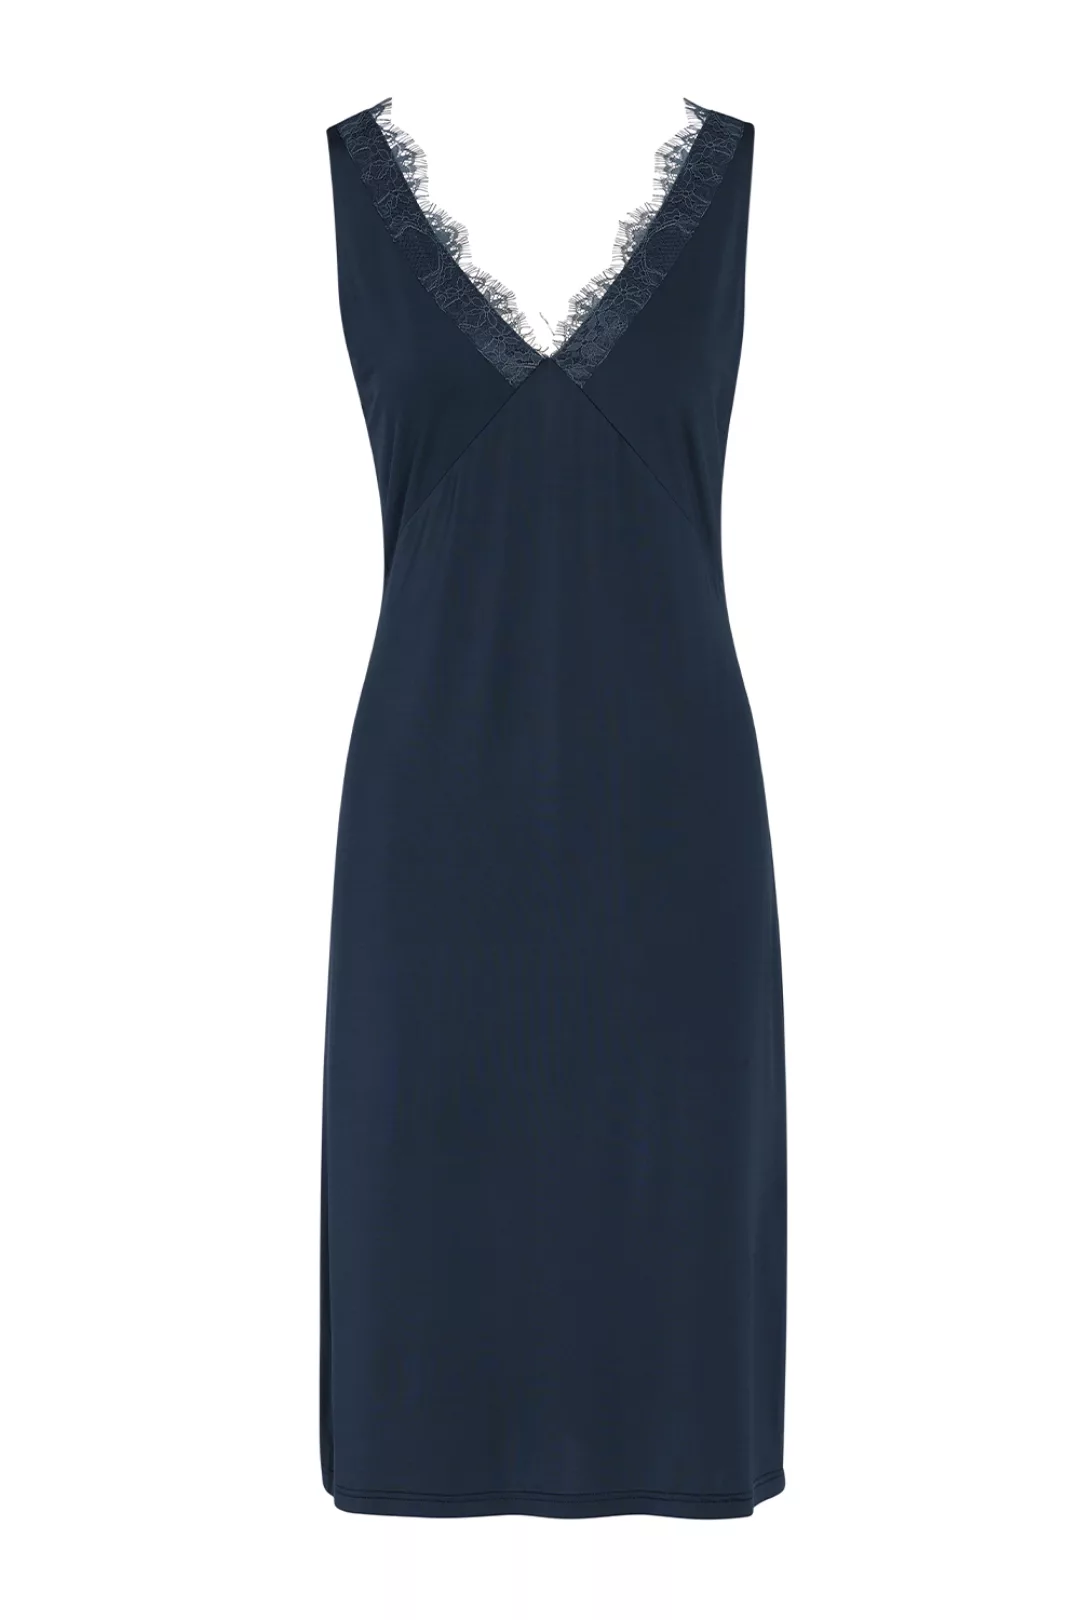 ESSENZA Lexi Uni Nachthemd ärmellos Loungewear 4 40 blau günstig online kaufen